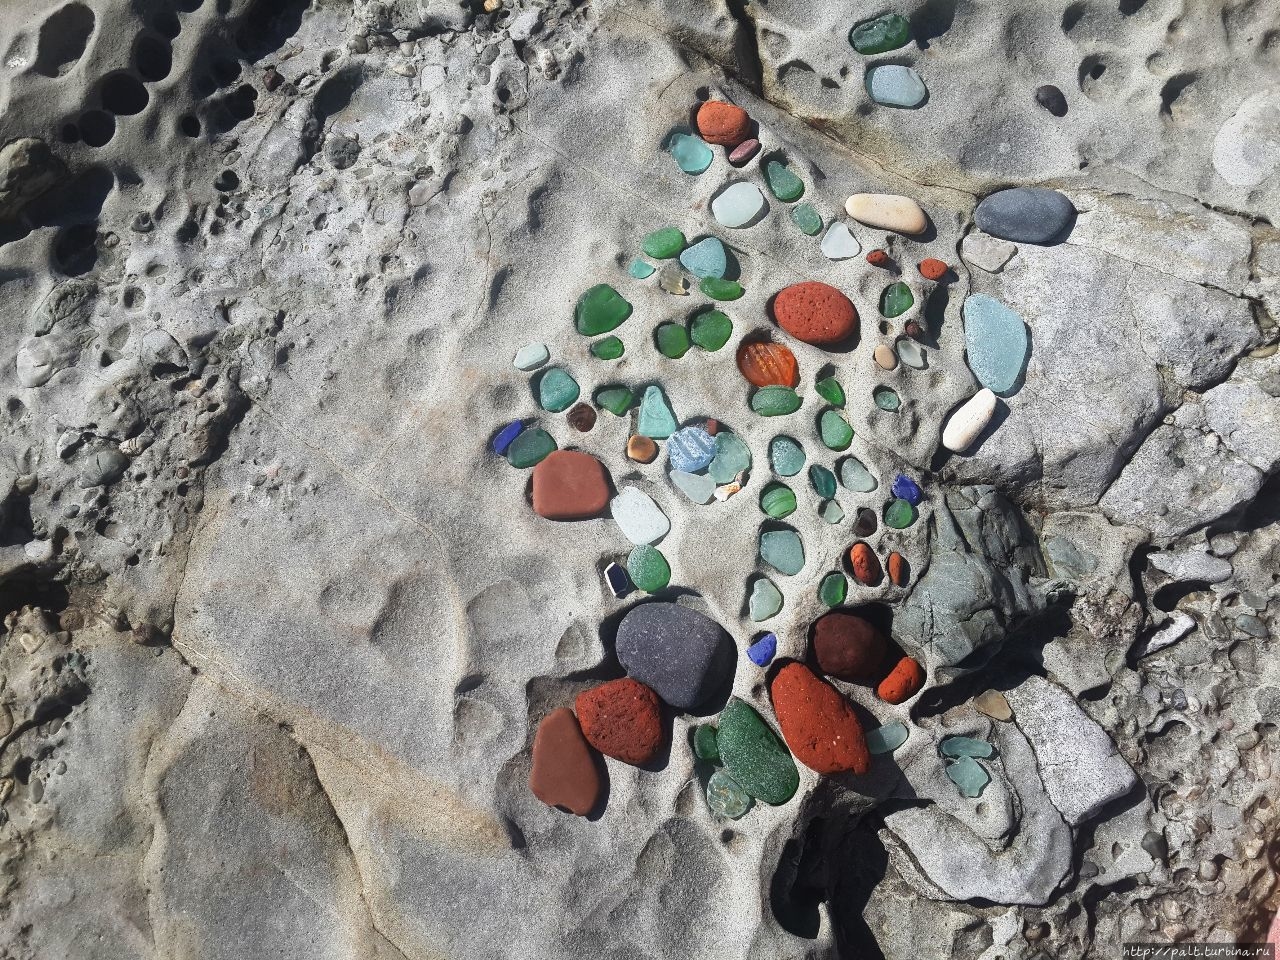 Что нам стоит раскрасить яркими стеклянными красками ячеистые скалы! Владивосток, Россия